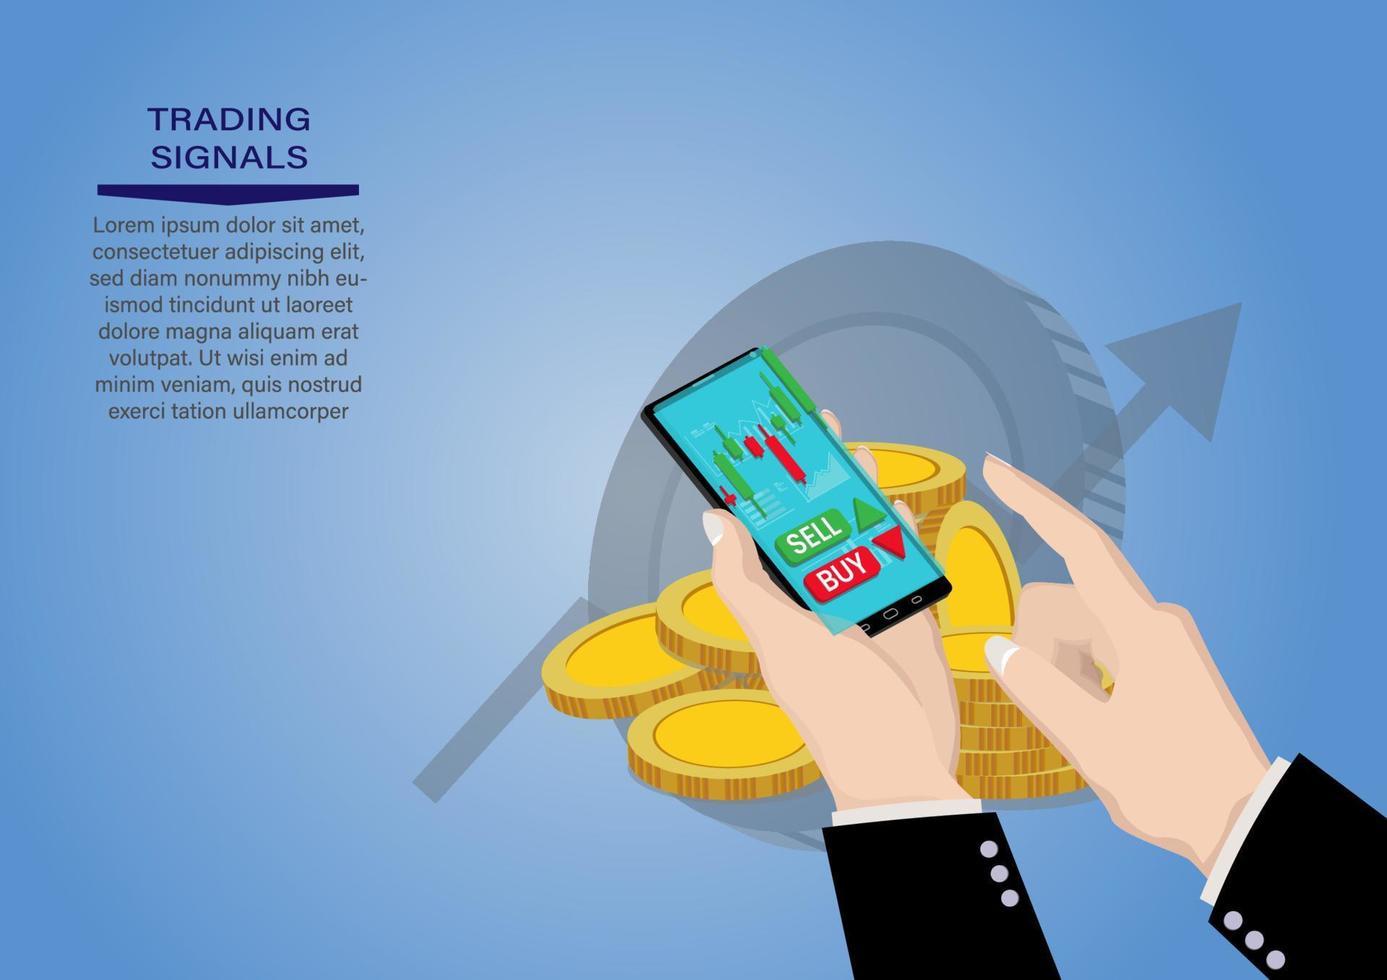 teléfono inteligente de mano con gráfico de velas de venta de acciones y compra usando teléfonos móviles, comercio de inversiones de mercado, ilustración vectorial vector